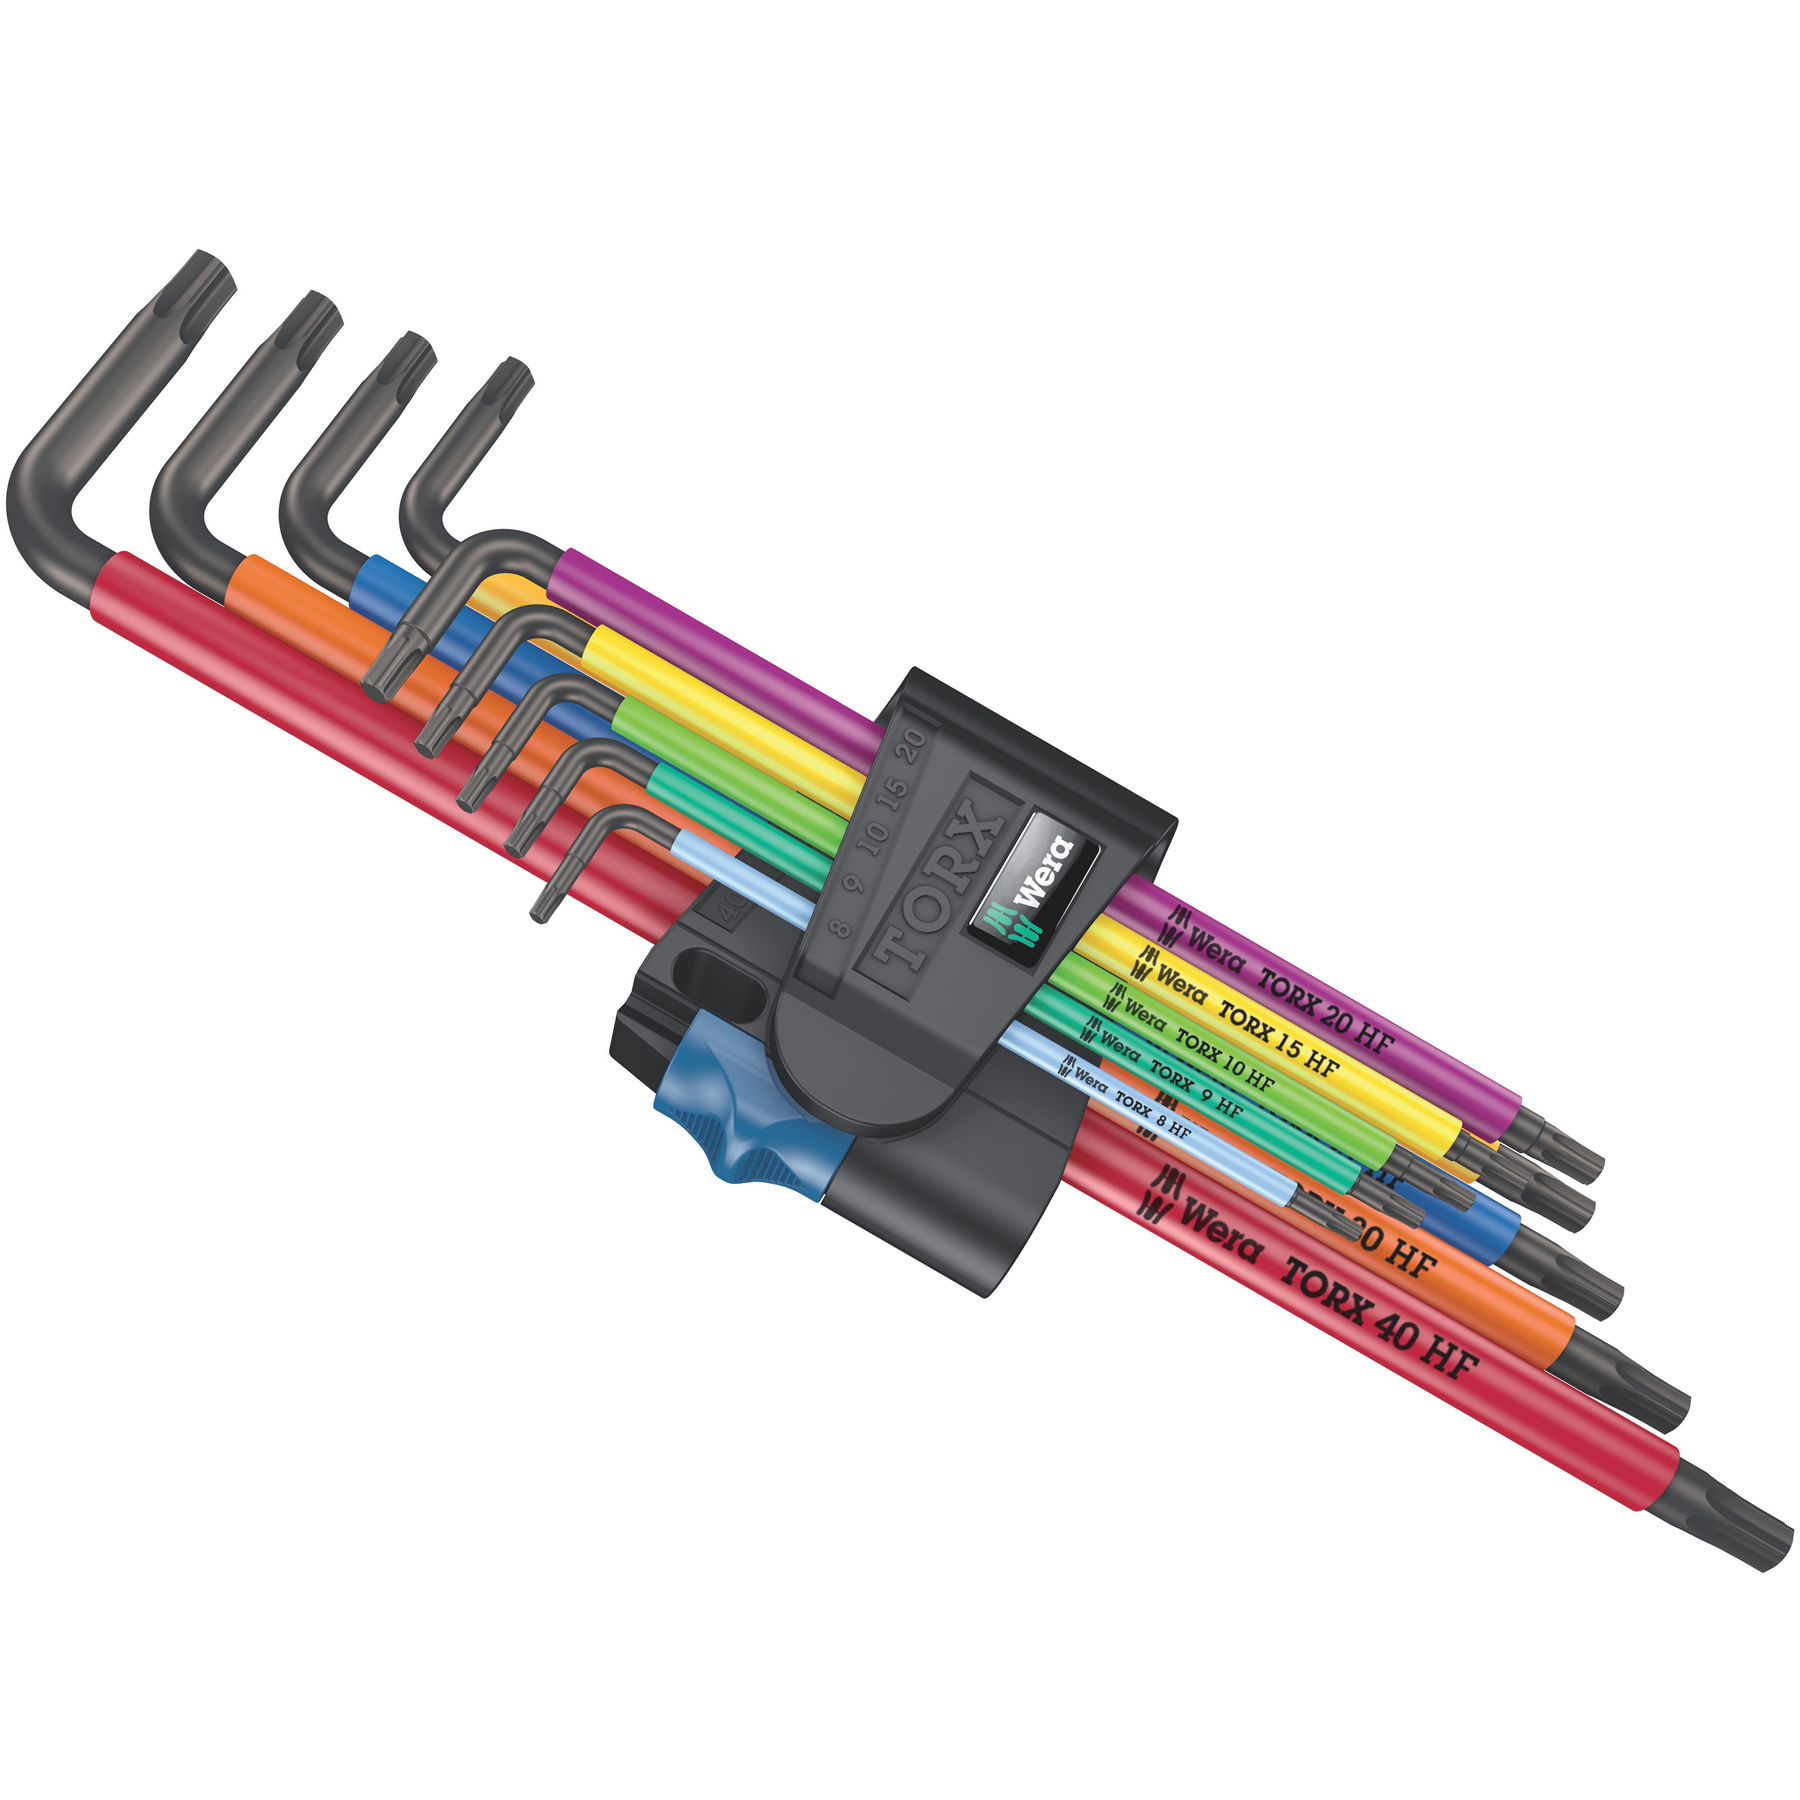 Produktbild von Wera 967/9 TX XL Multicolour HF 1 - Torx Winkelschlüsselsatz - 9 Teile